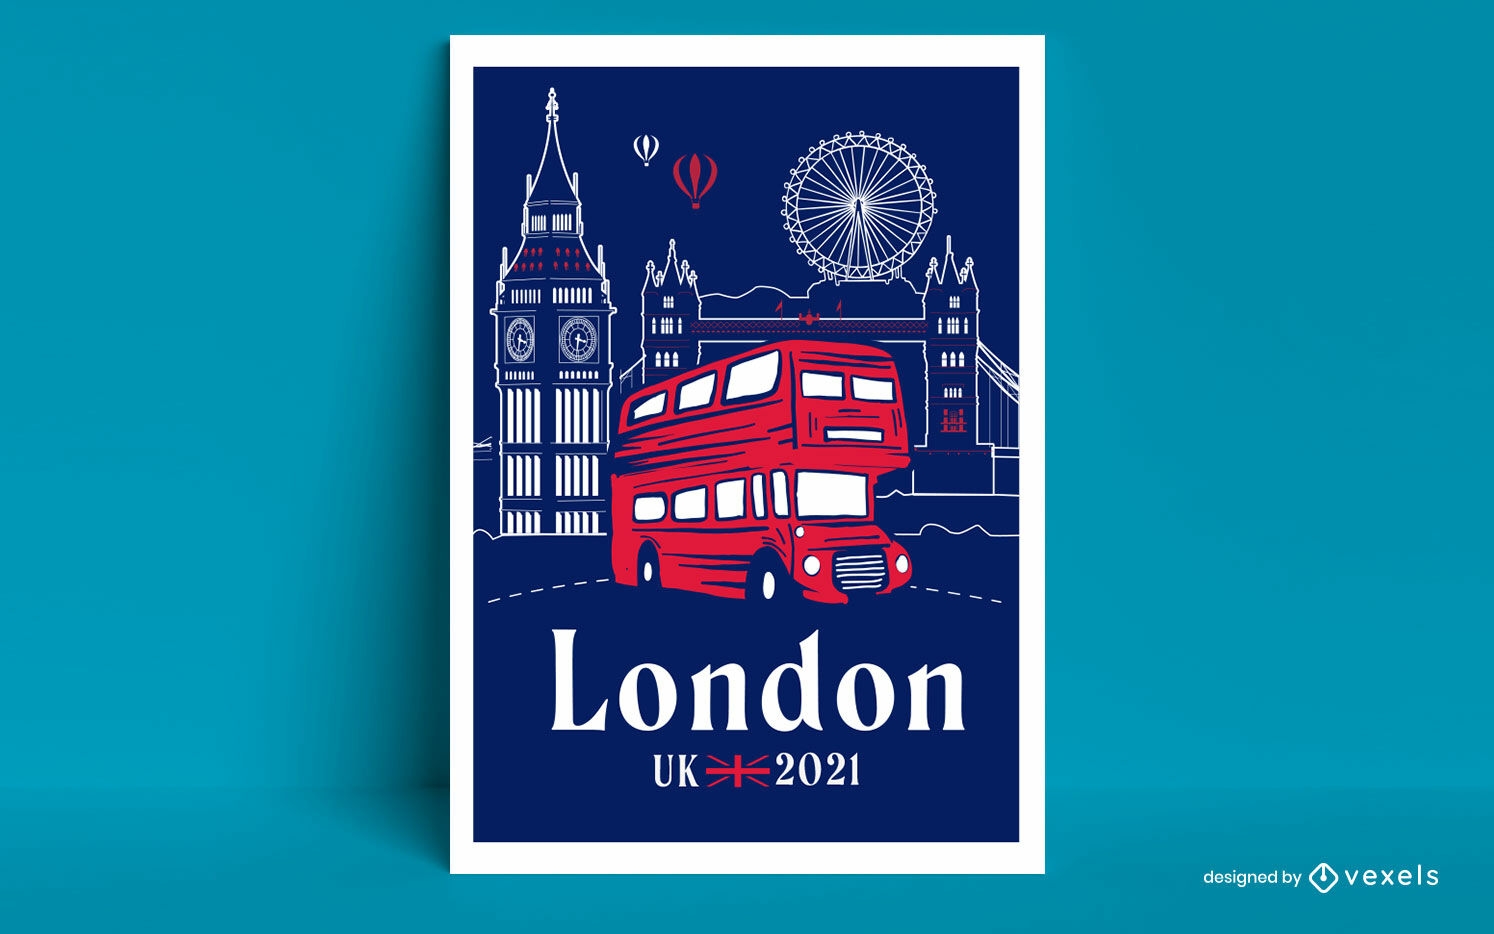 Design de cartaz de viagem de ônibus turístico da cidade de Londres